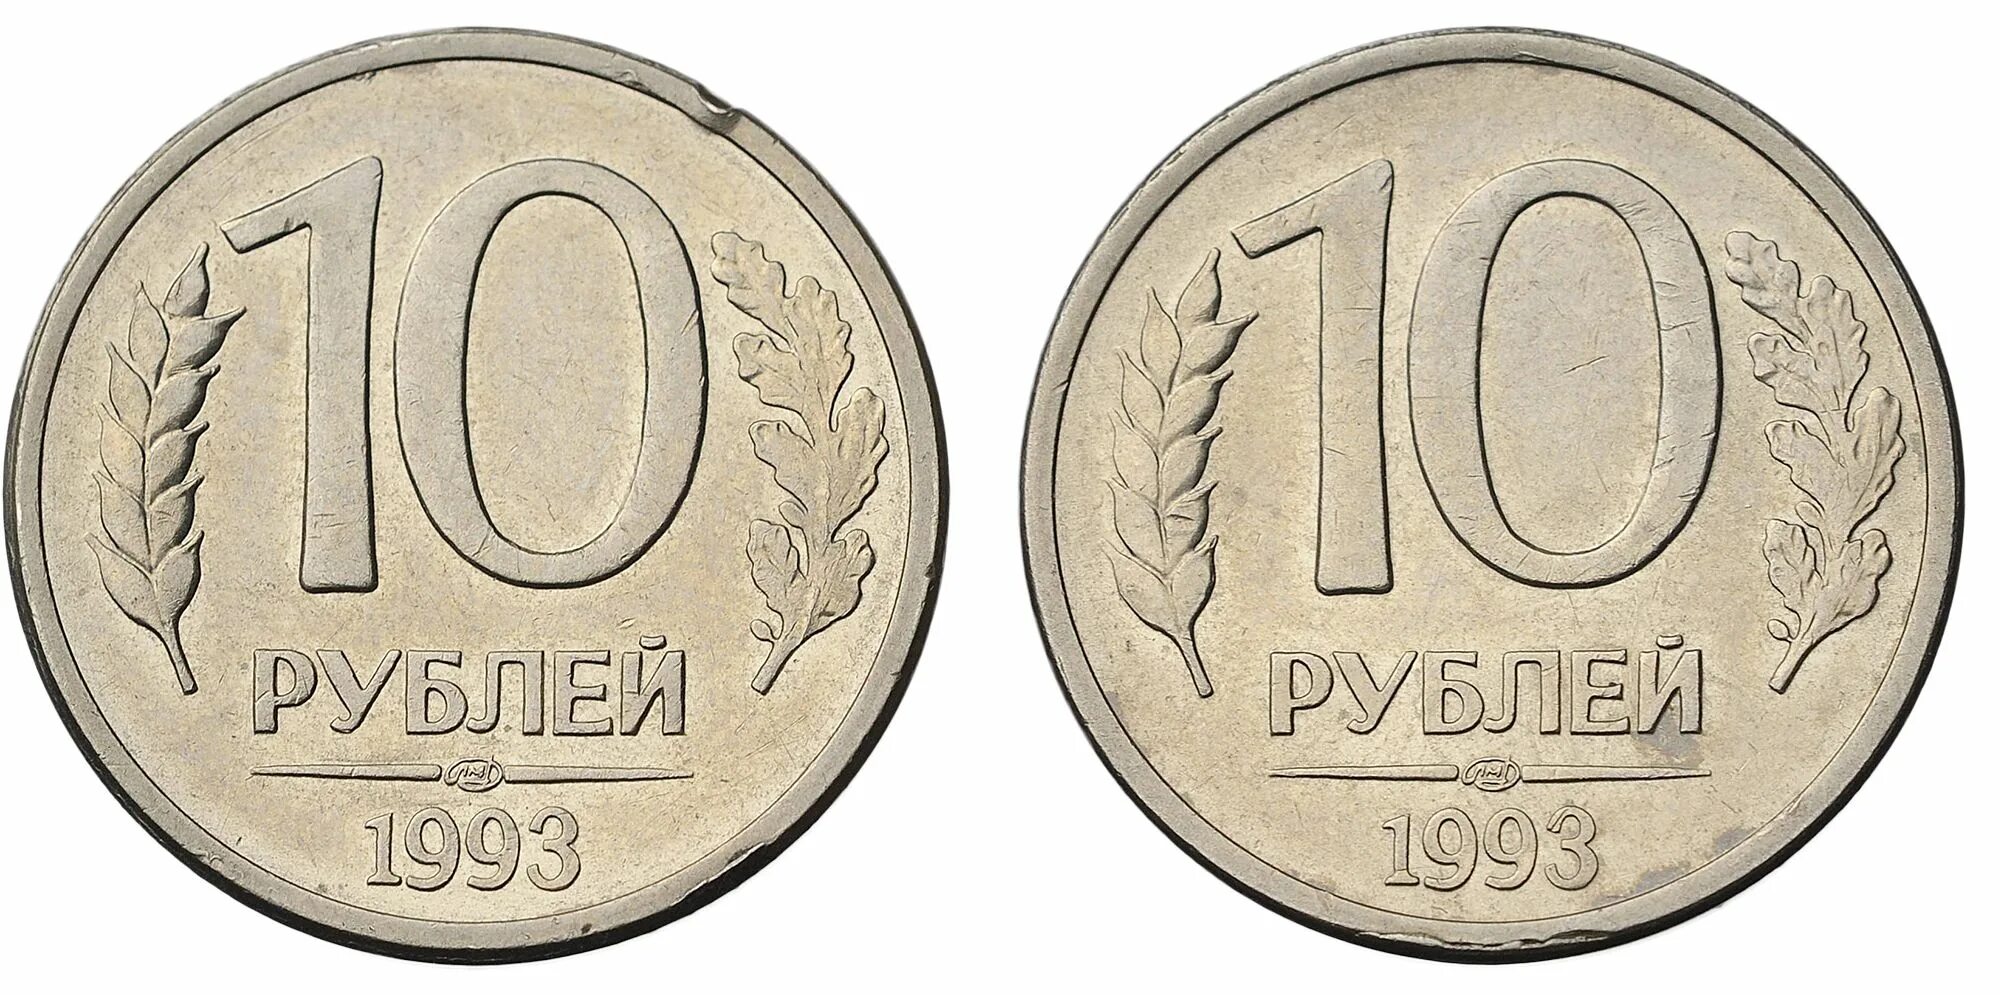 0 currencies. 10 Рублей 1993 ЛМД. 10 Рублей 1993г. Монета 10 рублей 1993 года. Медно-никелевый сплав цвет.